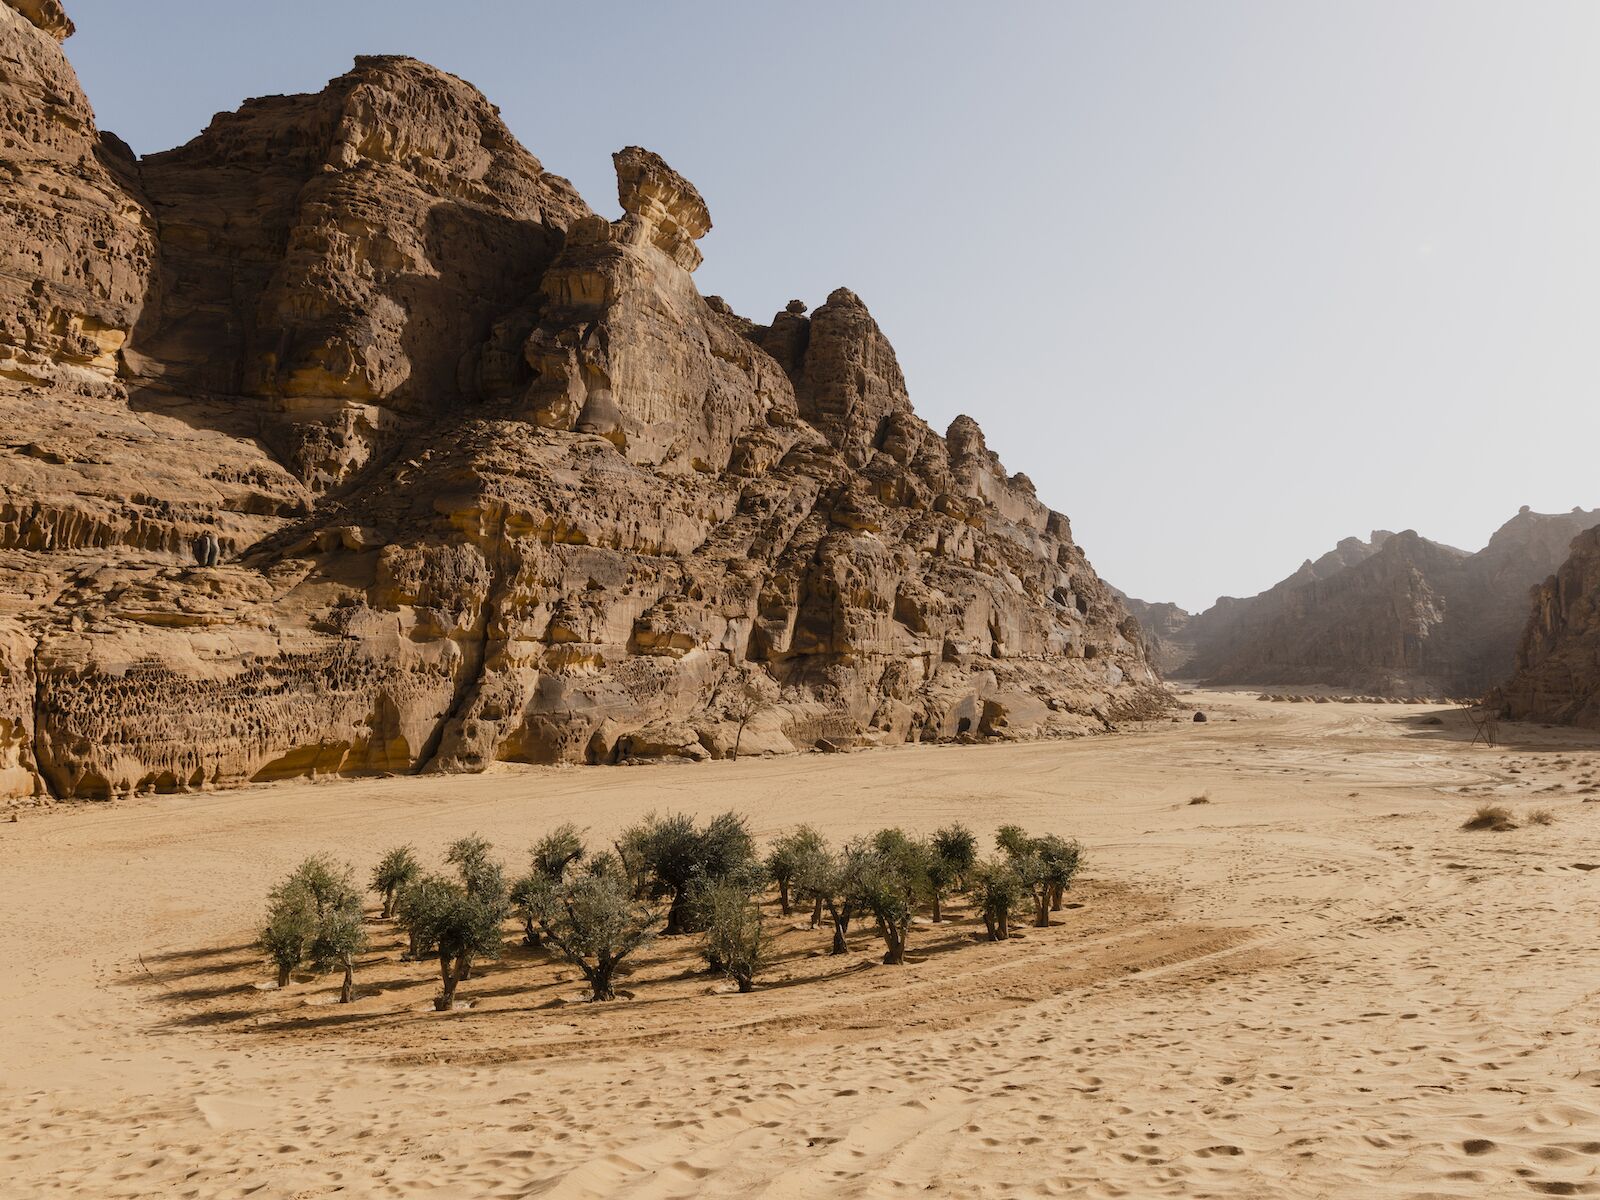 Artwork of a circle of trees in the Saudi Arabian desert for Desert X 2022.